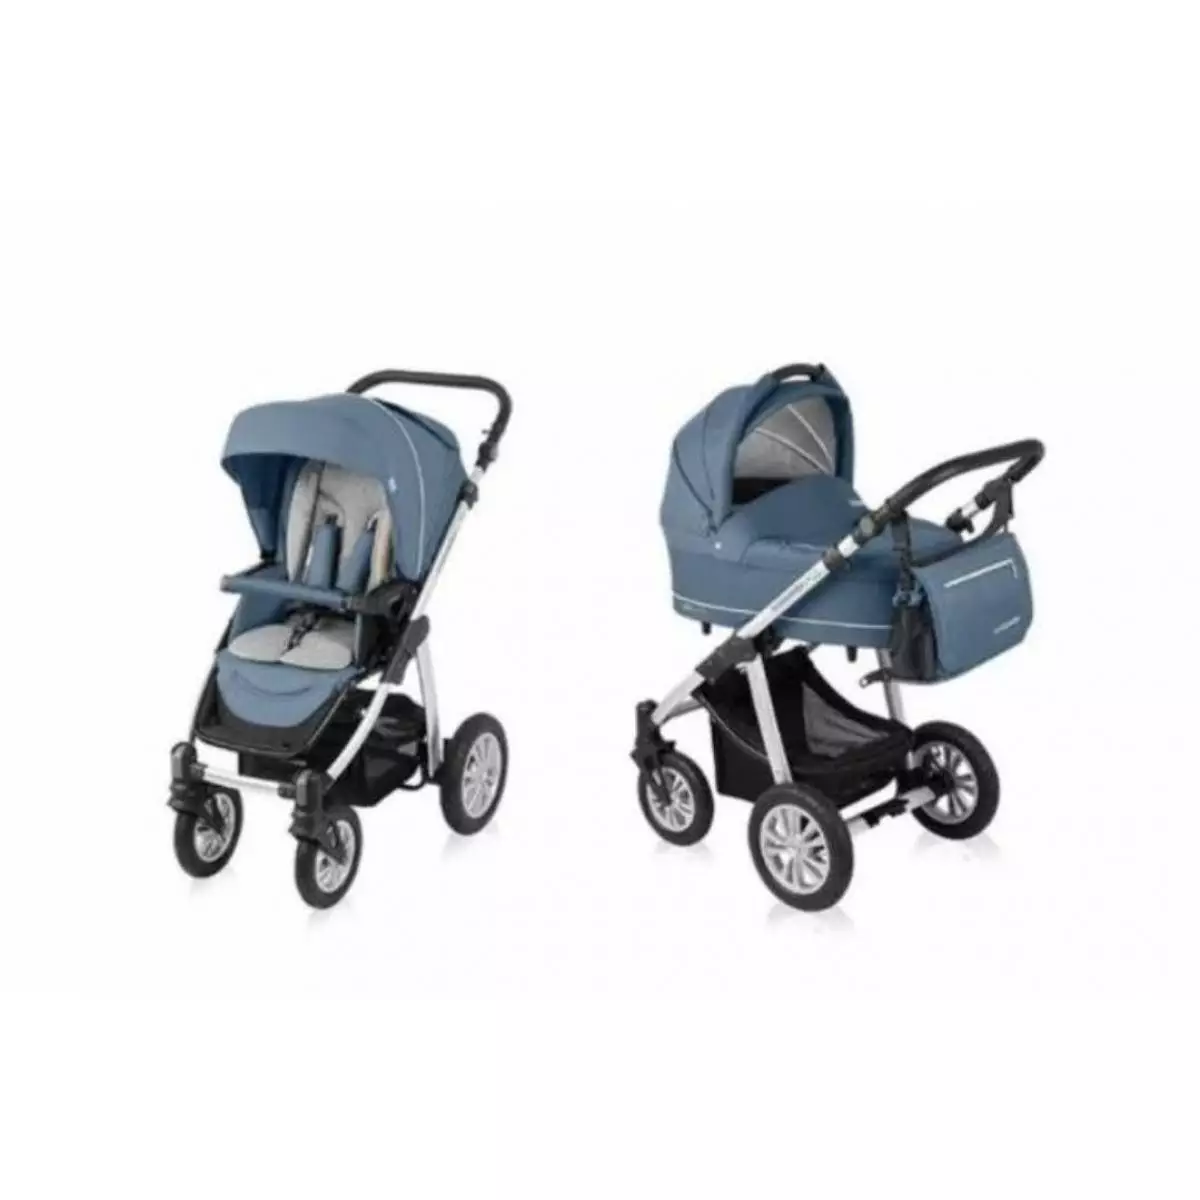 Prodam otroški voziček Baby design 2v1, voziček marela Fred on in lupinico Brevi - 3